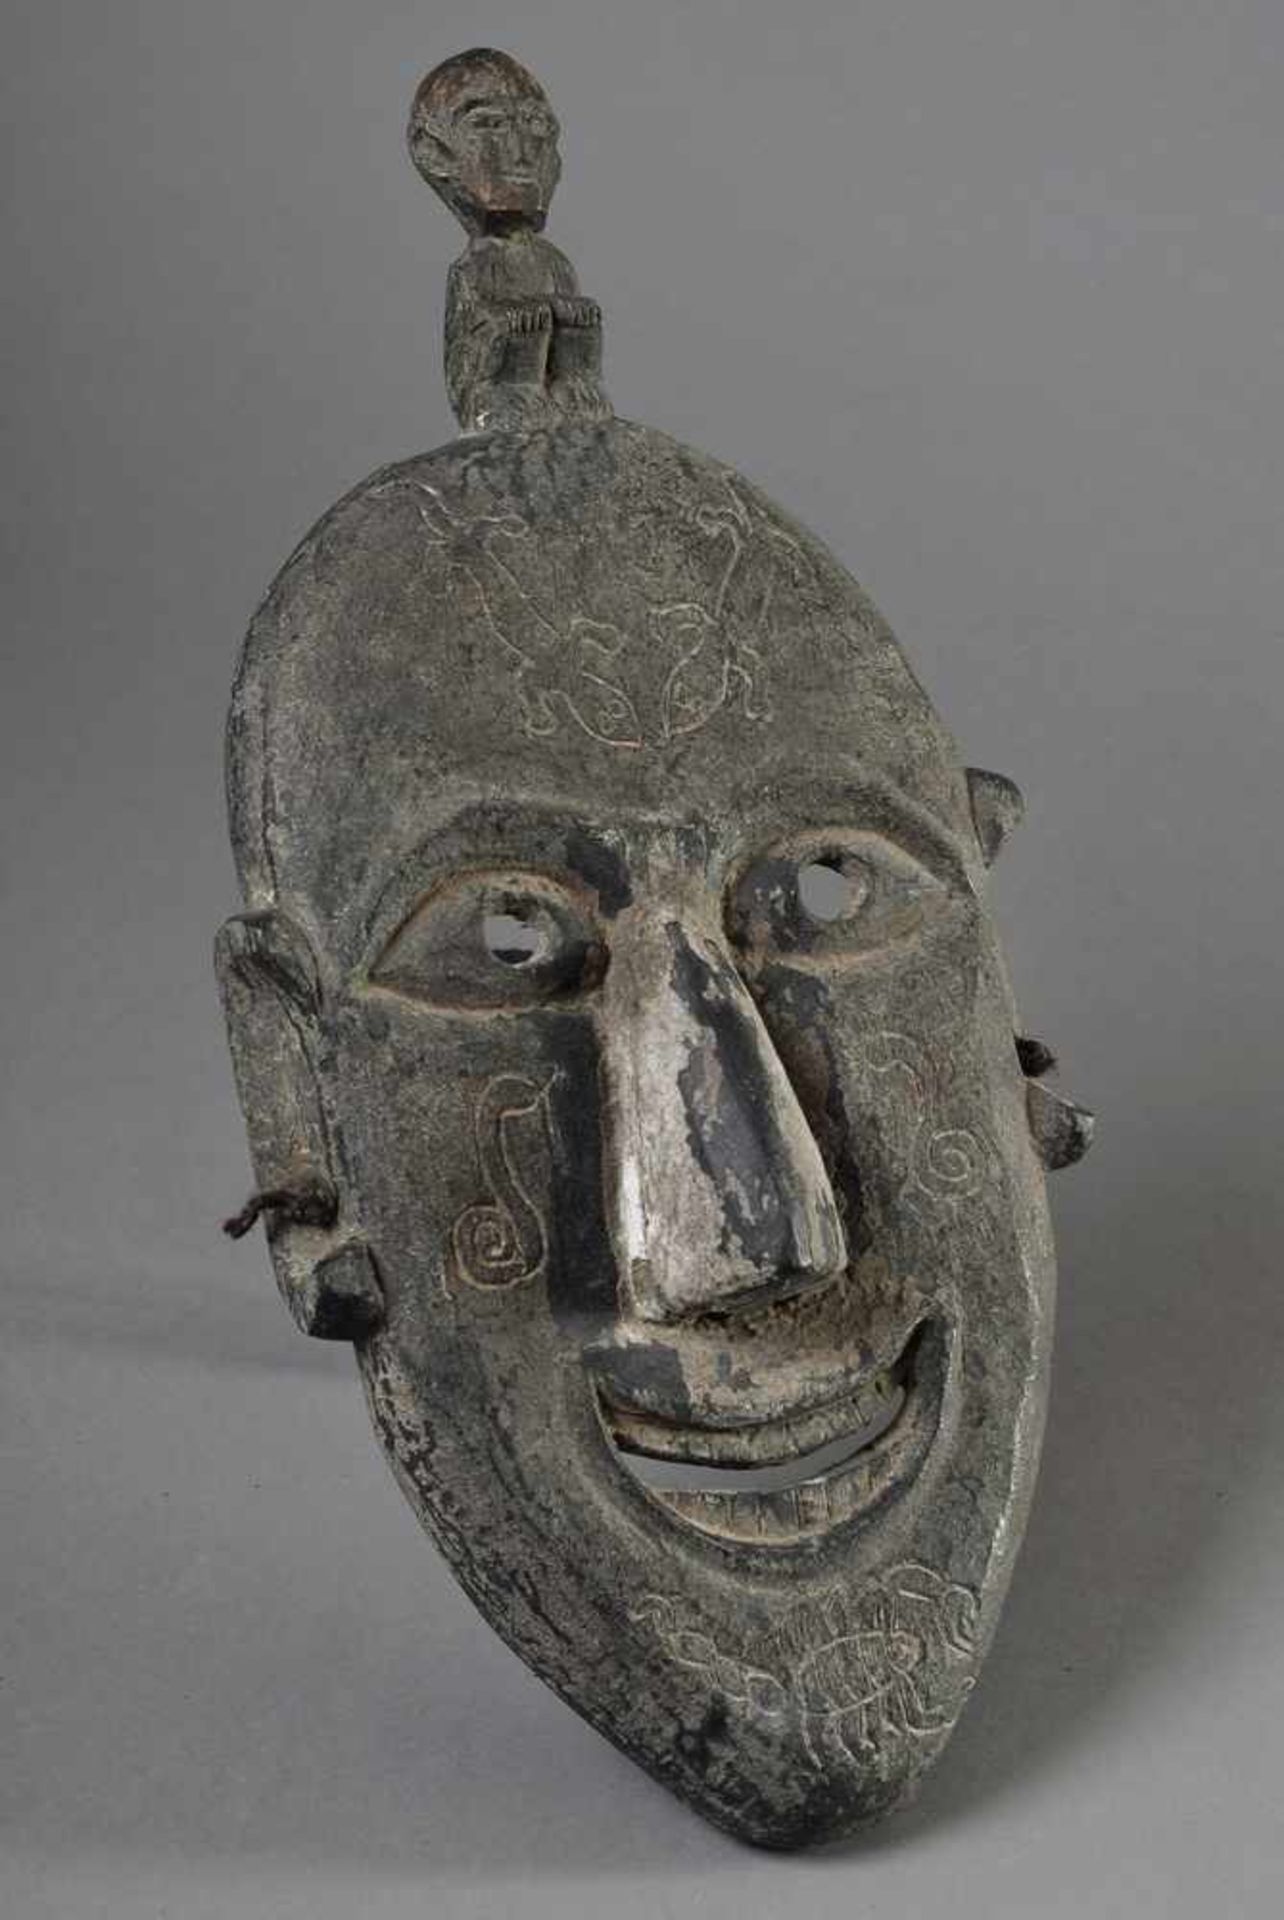 Batak Maske mit figürlichem Aufsatz, Holz, dunkel patiniert, Sumatra, 46x22cm, erworben in den - Bild 2 aus 6